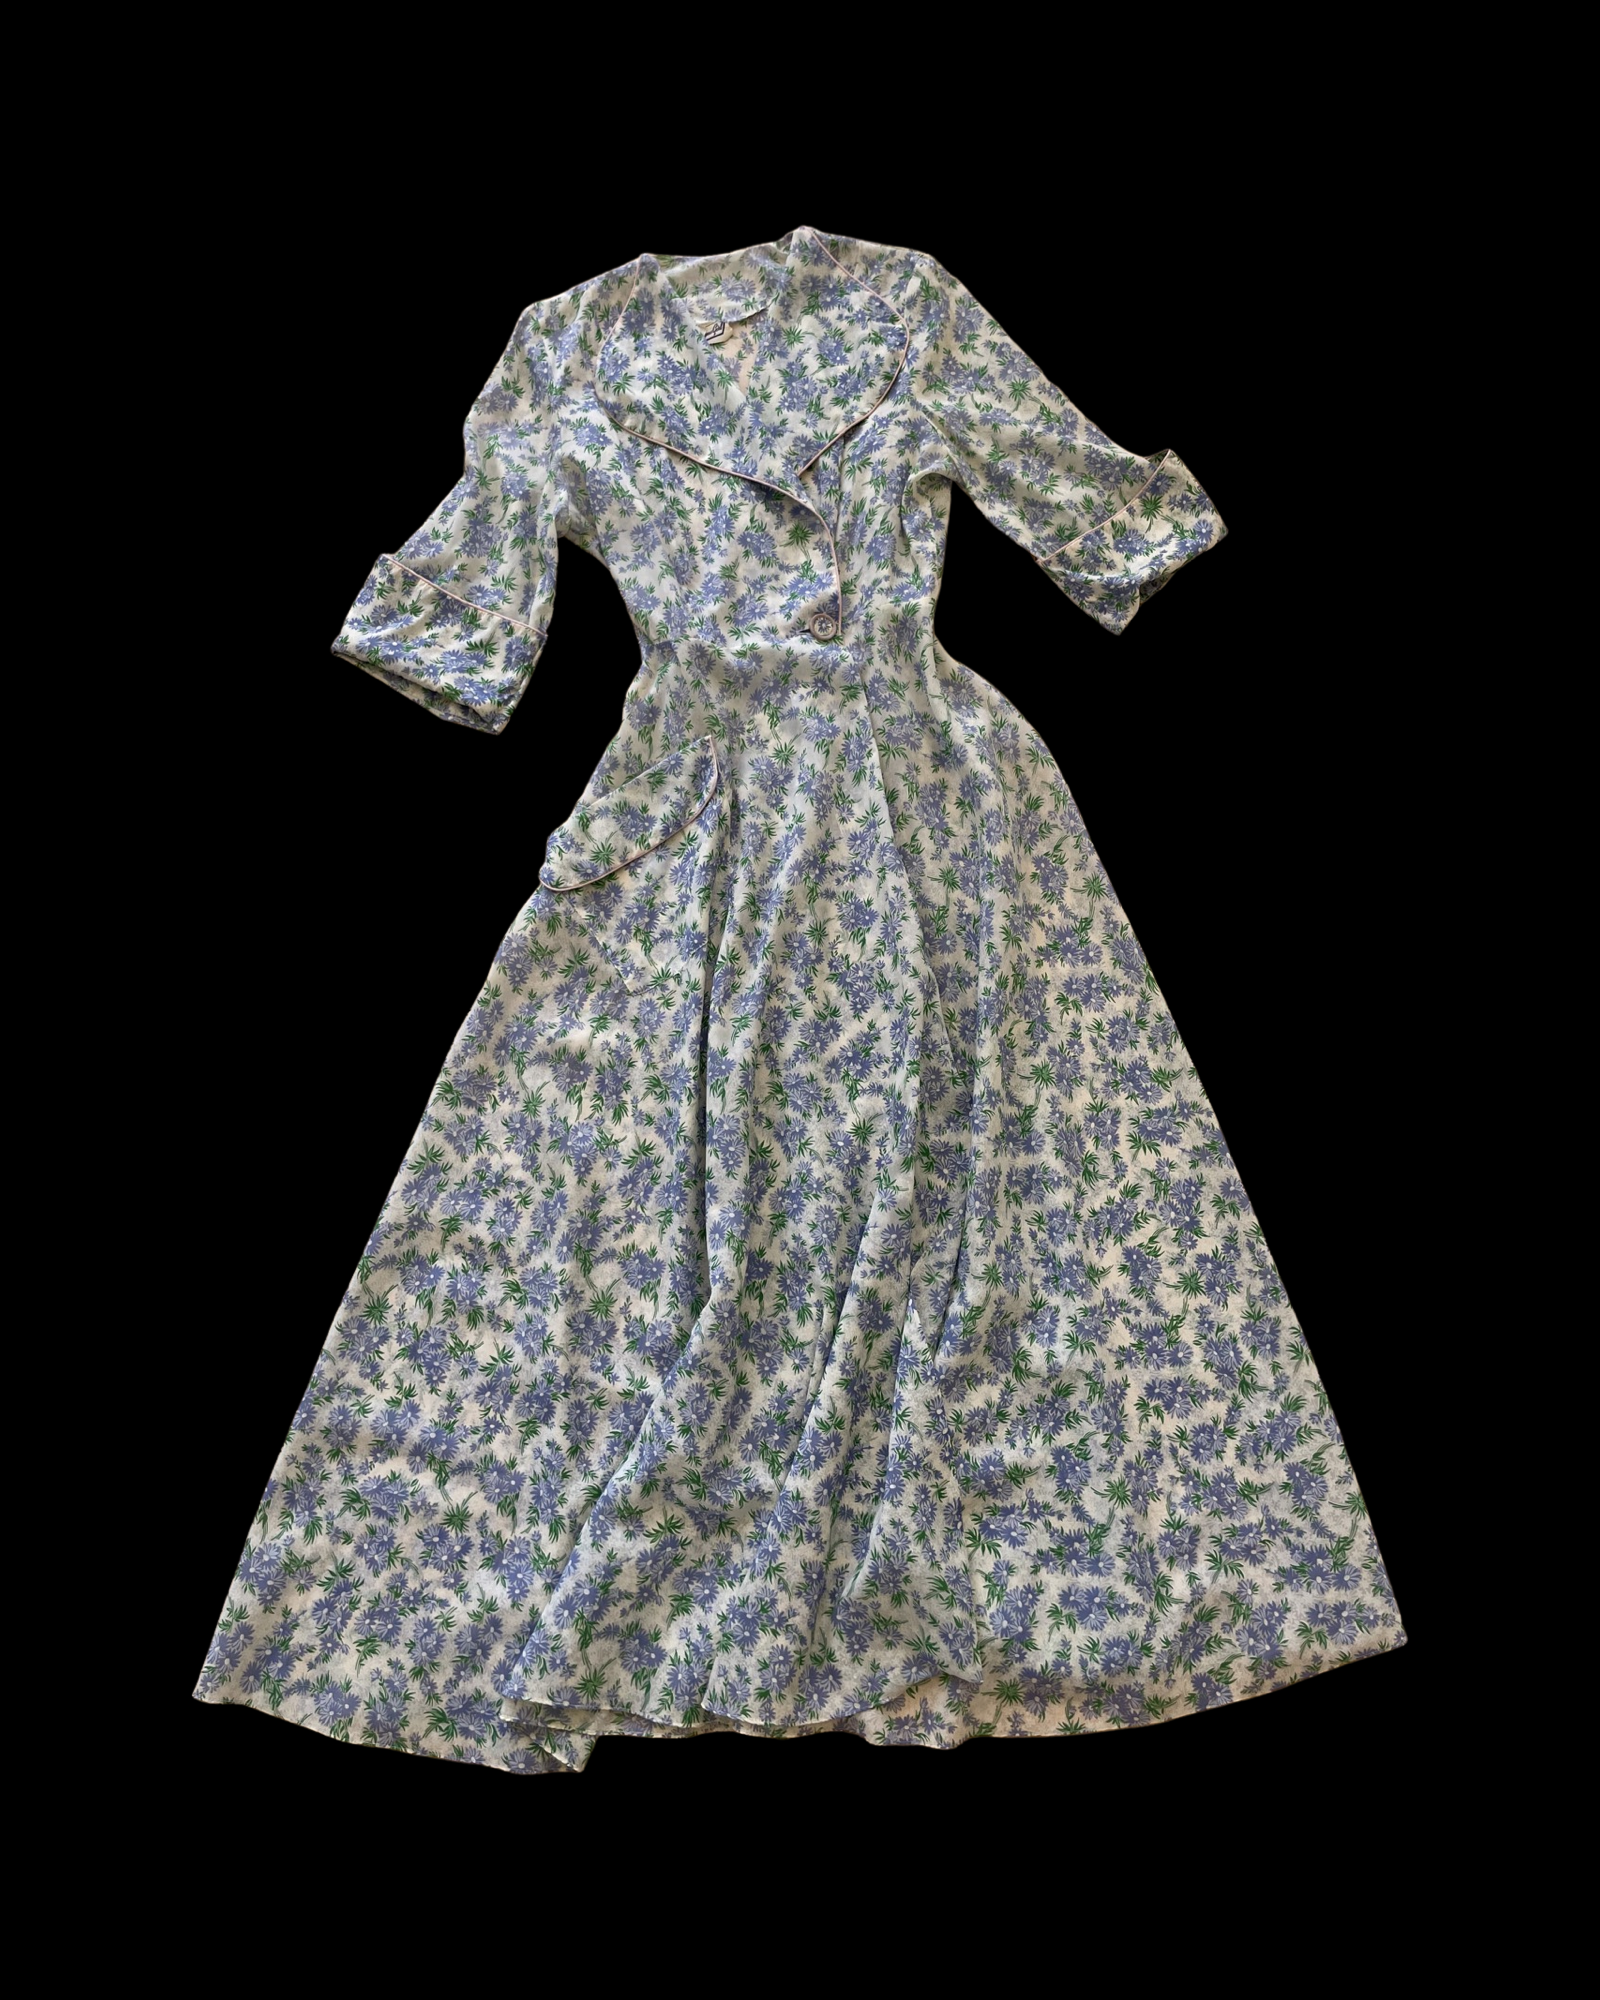 1940s Floral Wrap House Dress